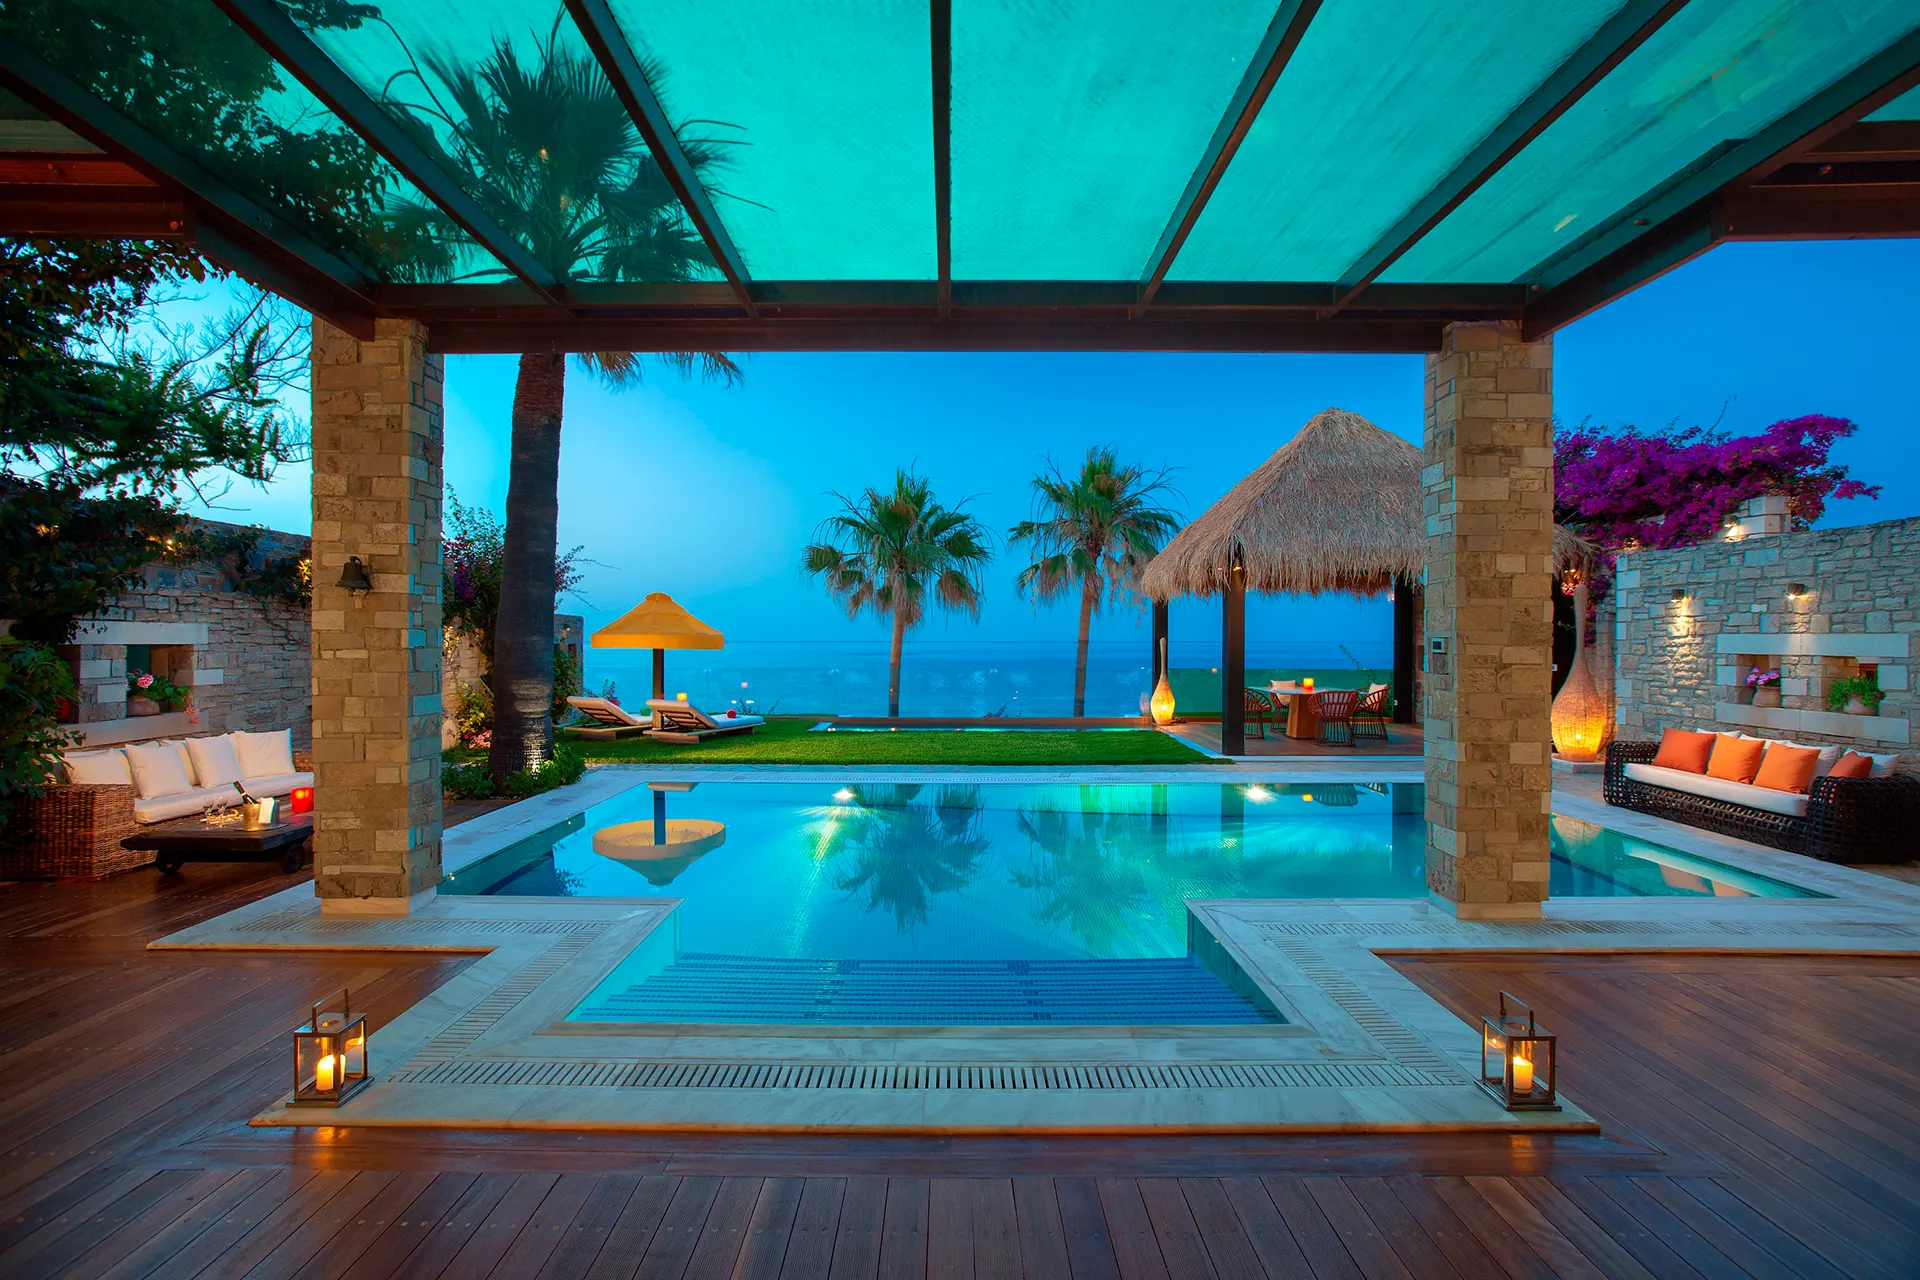 Poolbereich einer Luxusvilla im Abendlicht